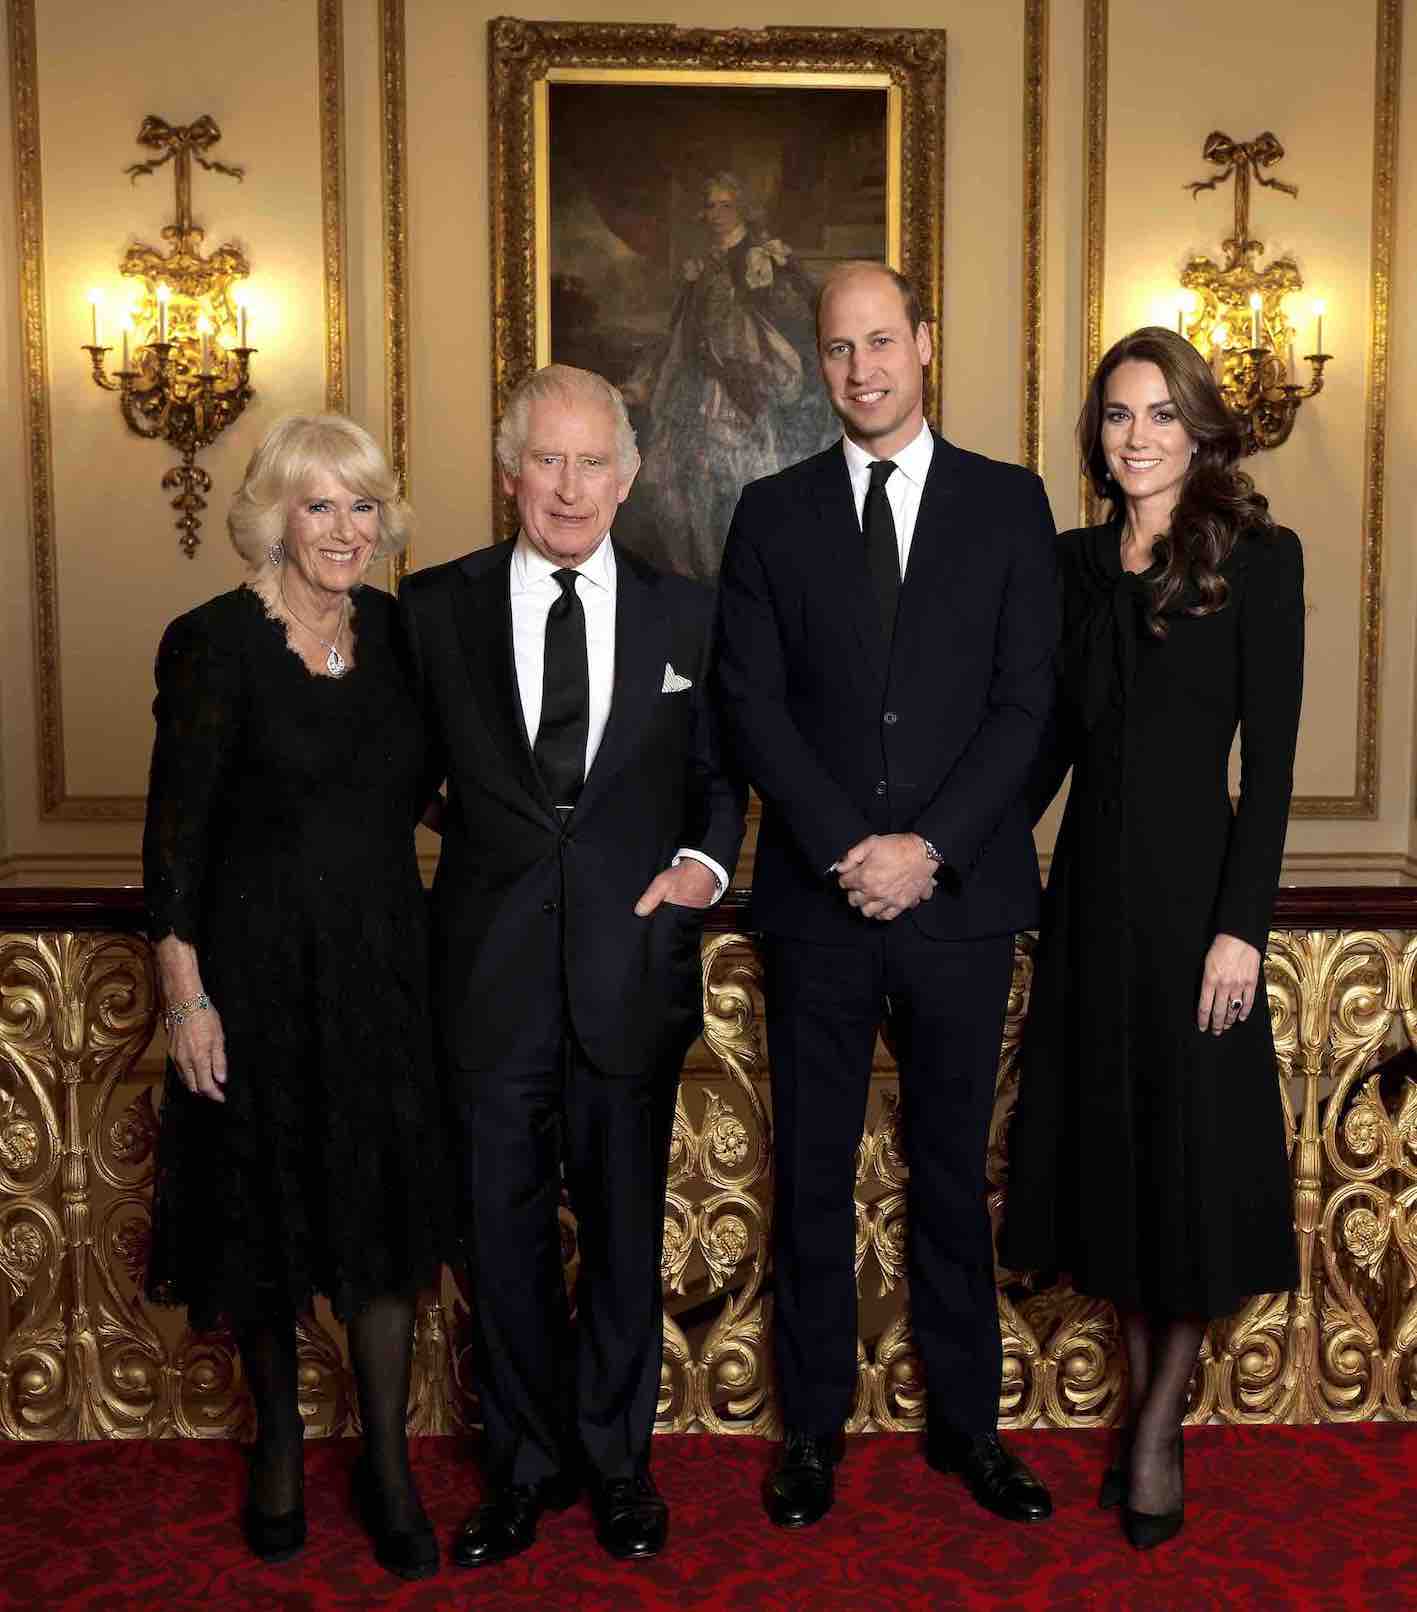 Foto oficial do Rei Charles III, Rainha Camilla e Príncipe e Princesa de Gales durante evento de recepção a chefes de estado em setembro de 2022 no Palácio de Buckingham